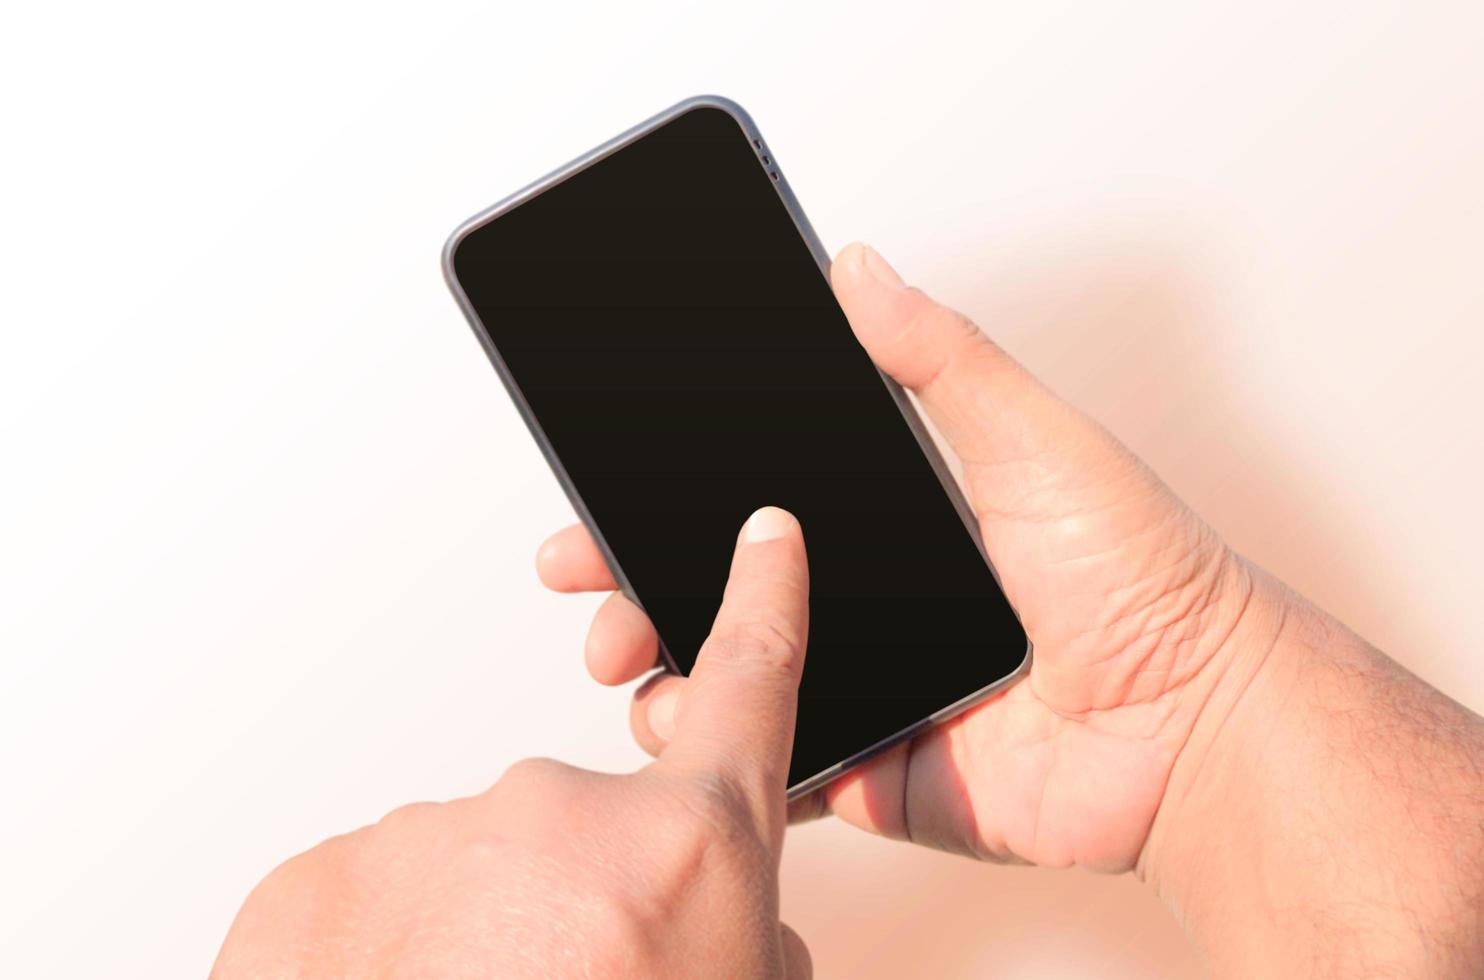 man hand som håller tomma isolerade smartphone bakgrund foto